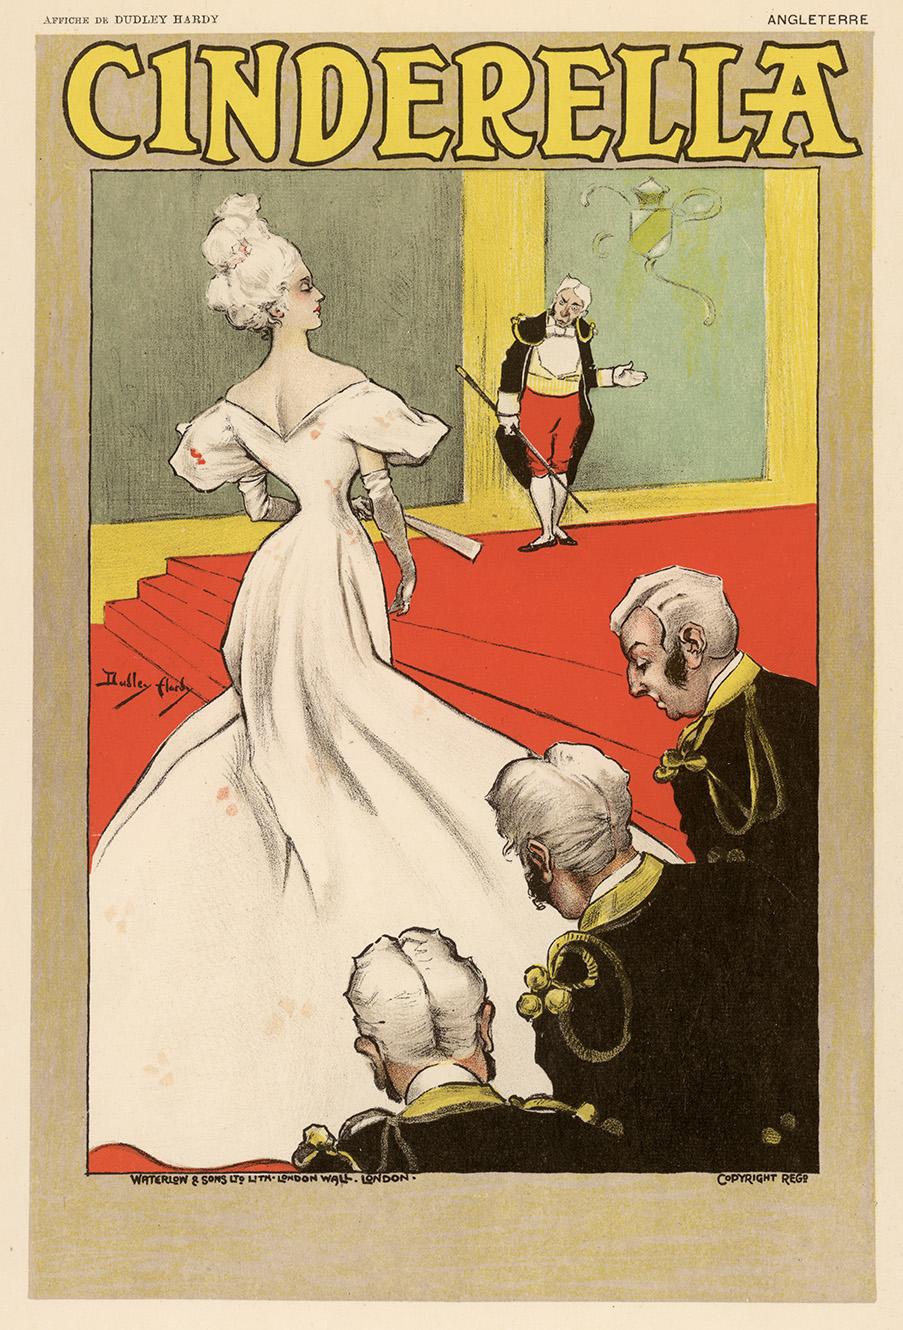 Jugendstil-Theaterplakat Cinderella von Dudley Hardy, veröffentlicht 1897 von der Imprimerie Chaix, Paris, der Druckerei, die für die Veröffentlichung der Werke des Meisters der Belle Epoque Jules Chret bekannt ist.

Dieses Plakat für Cinderella